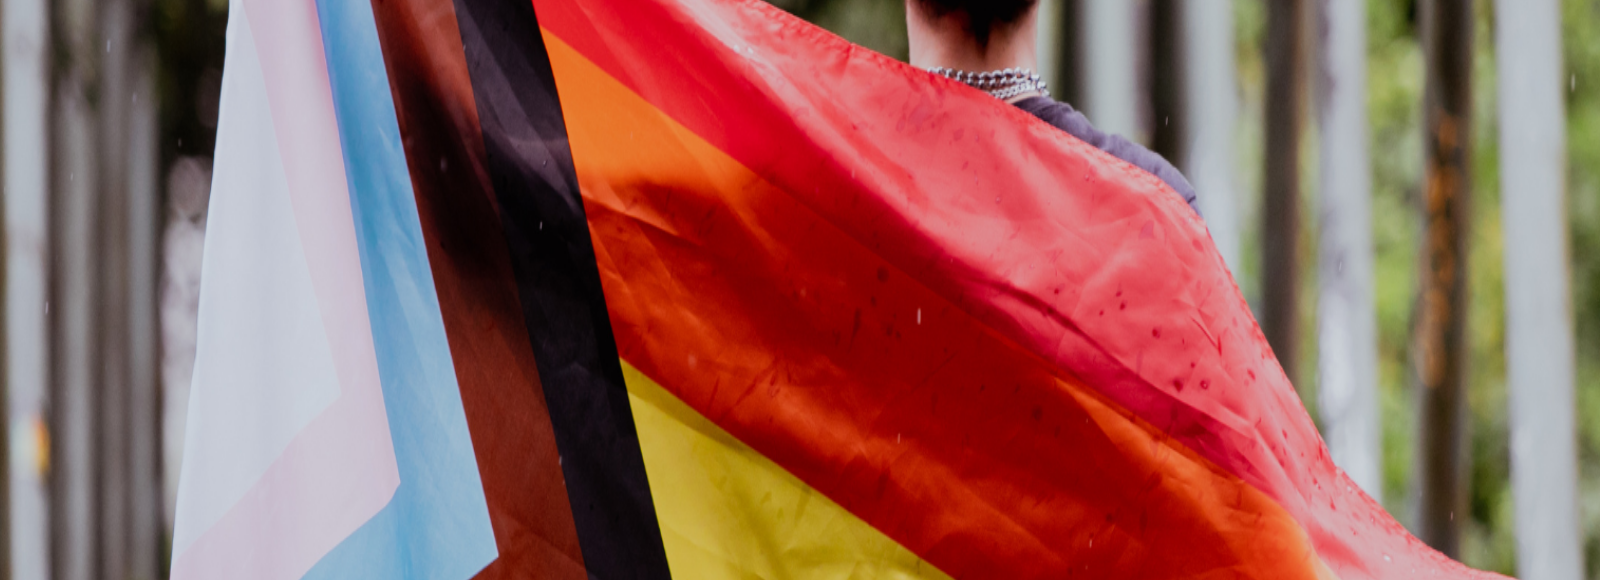 Person wrapped in the progressive Pride flag